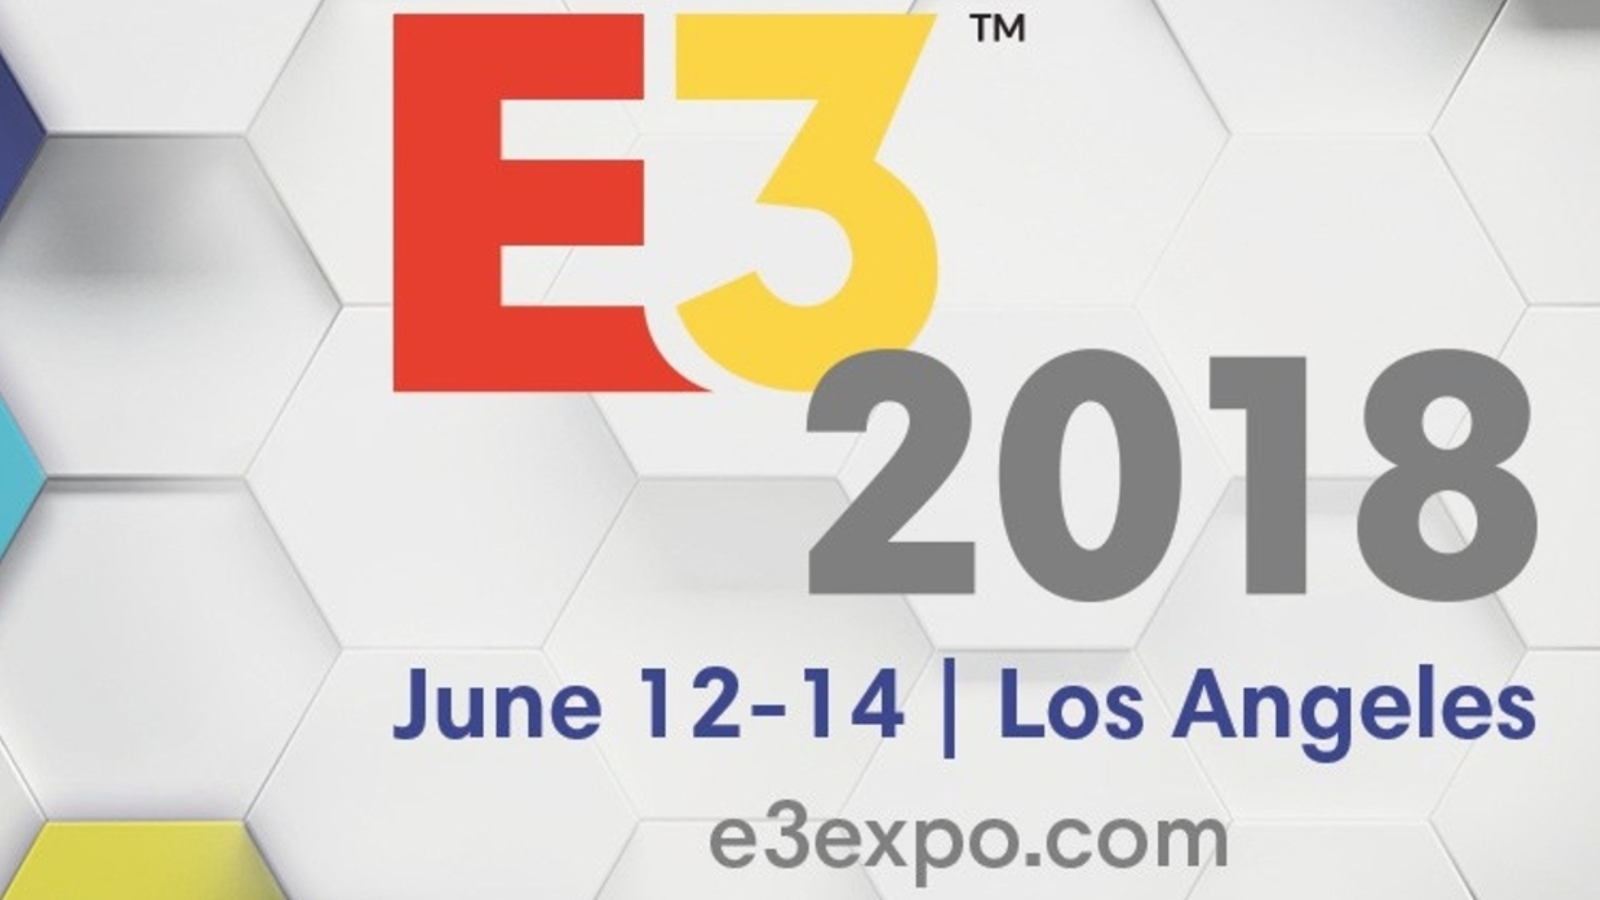 Os sobreviventes: PS3 e Xbox 360 também tiveram jogos mostrados na E3 -  14/06/2017 - UOL Start